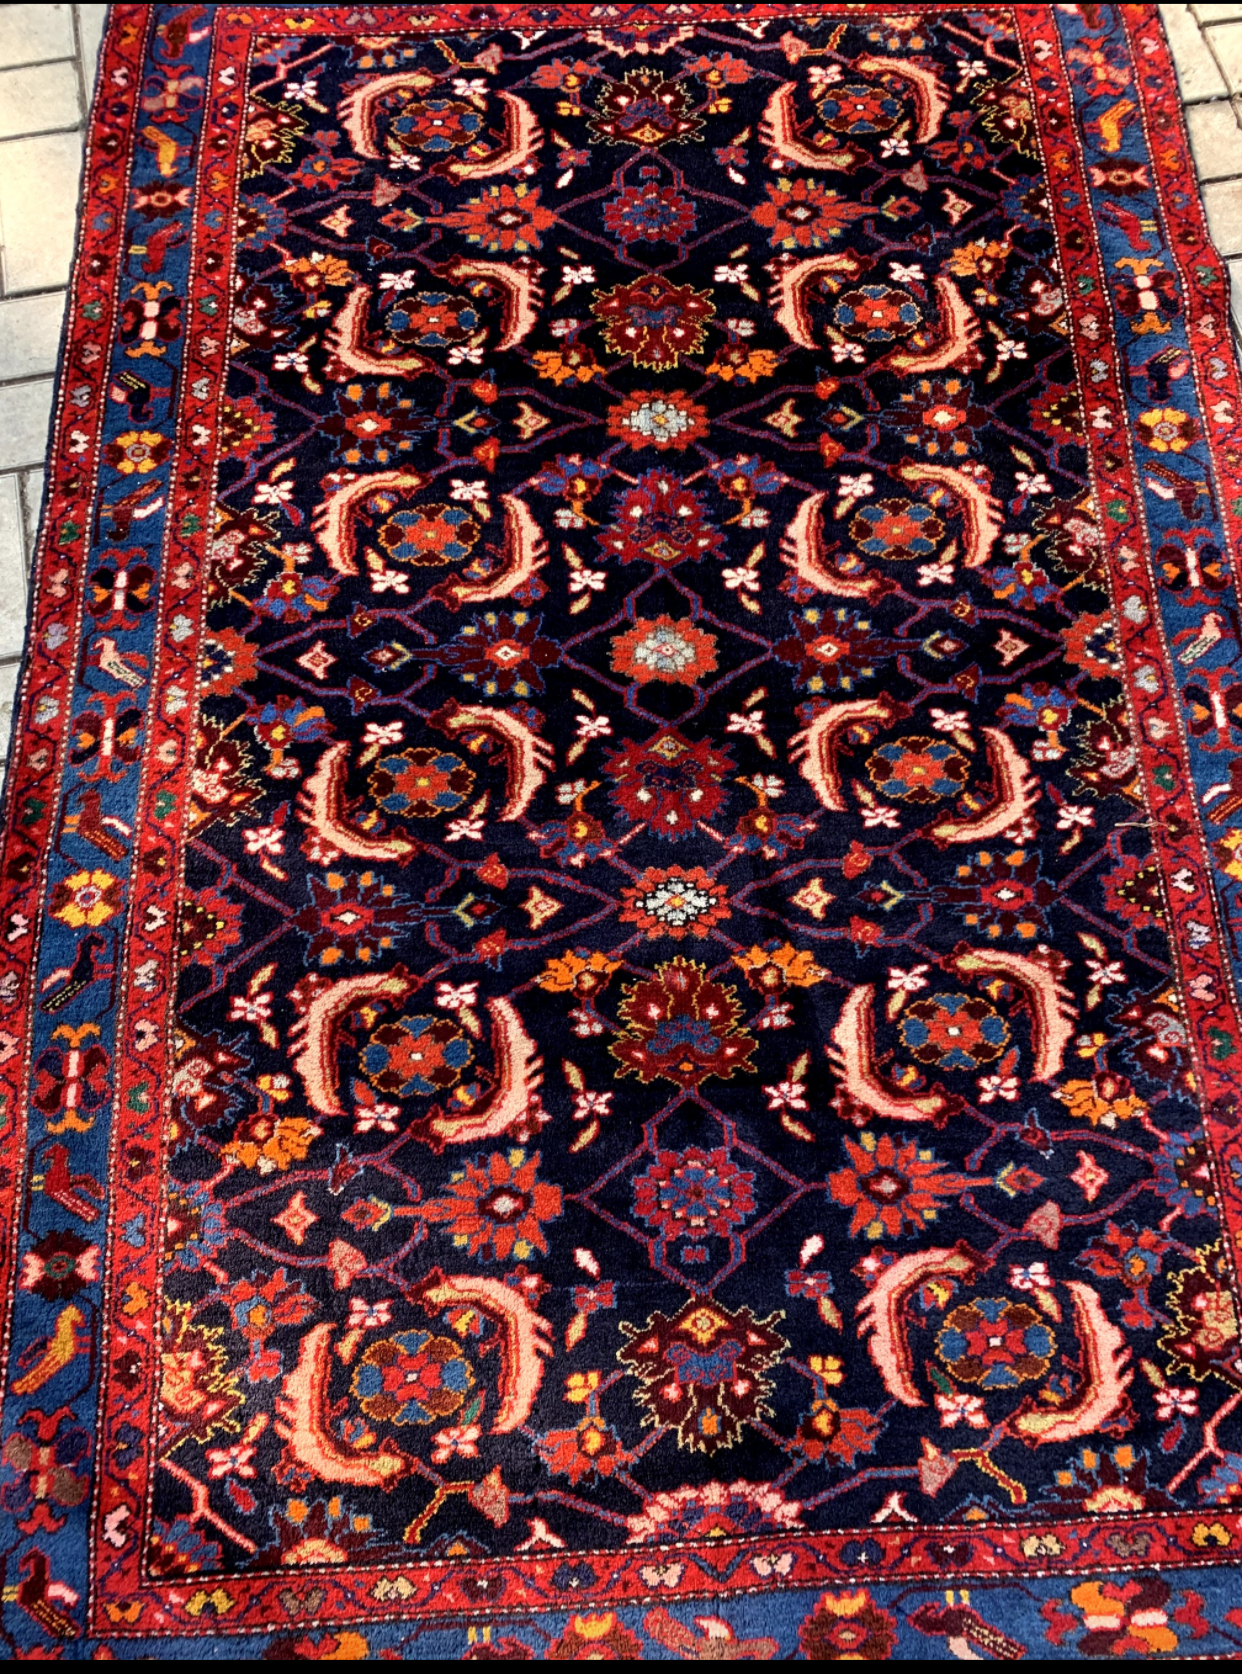 Nazar Aroian Silver and Carpets